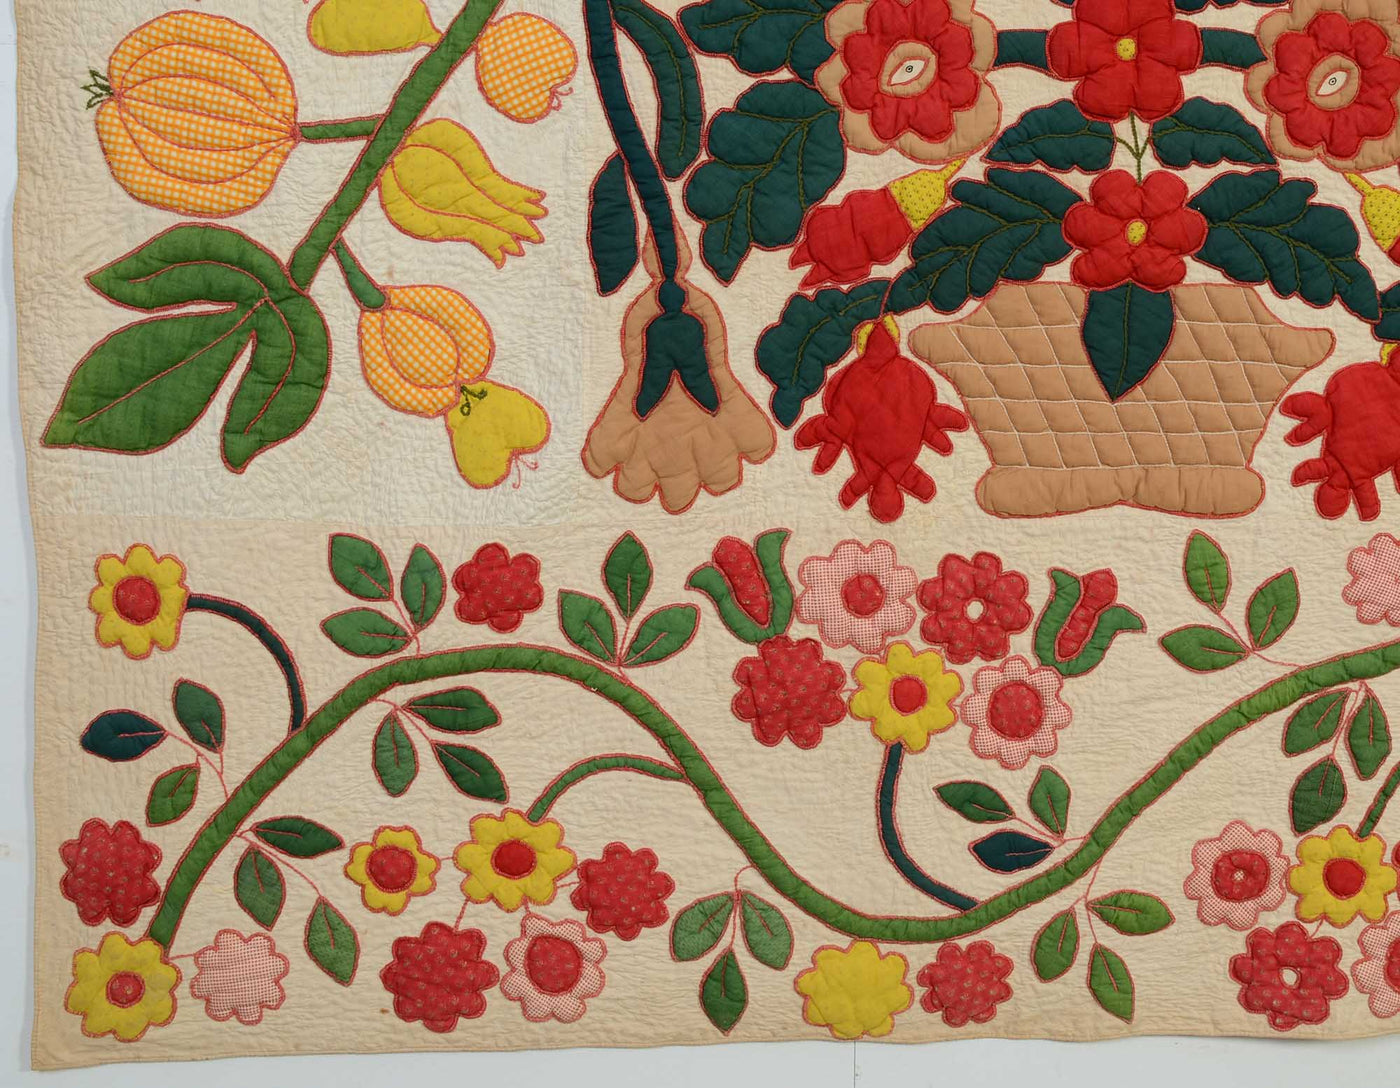 pots-of-flowers-stuffed-applique-quilt-1400548-detail-6